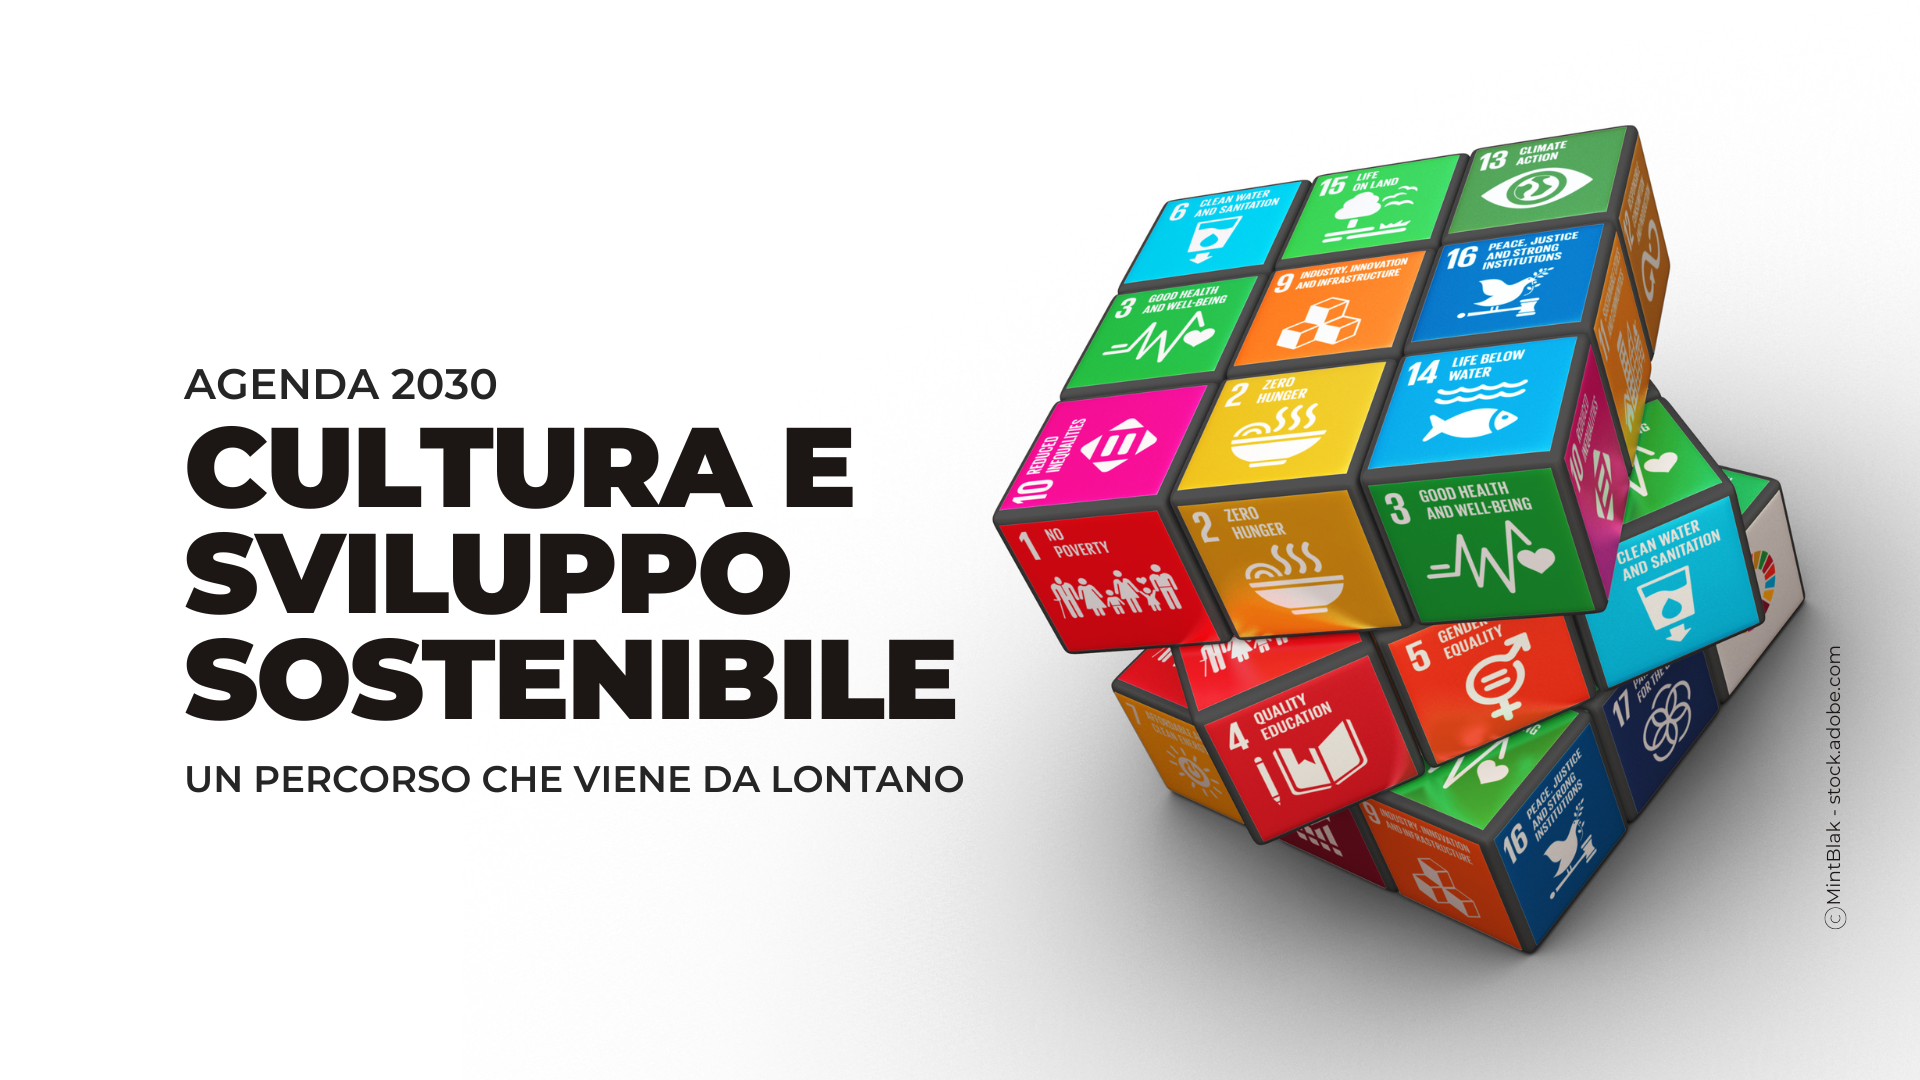 Agenda 2030 Copertina Sito (1)